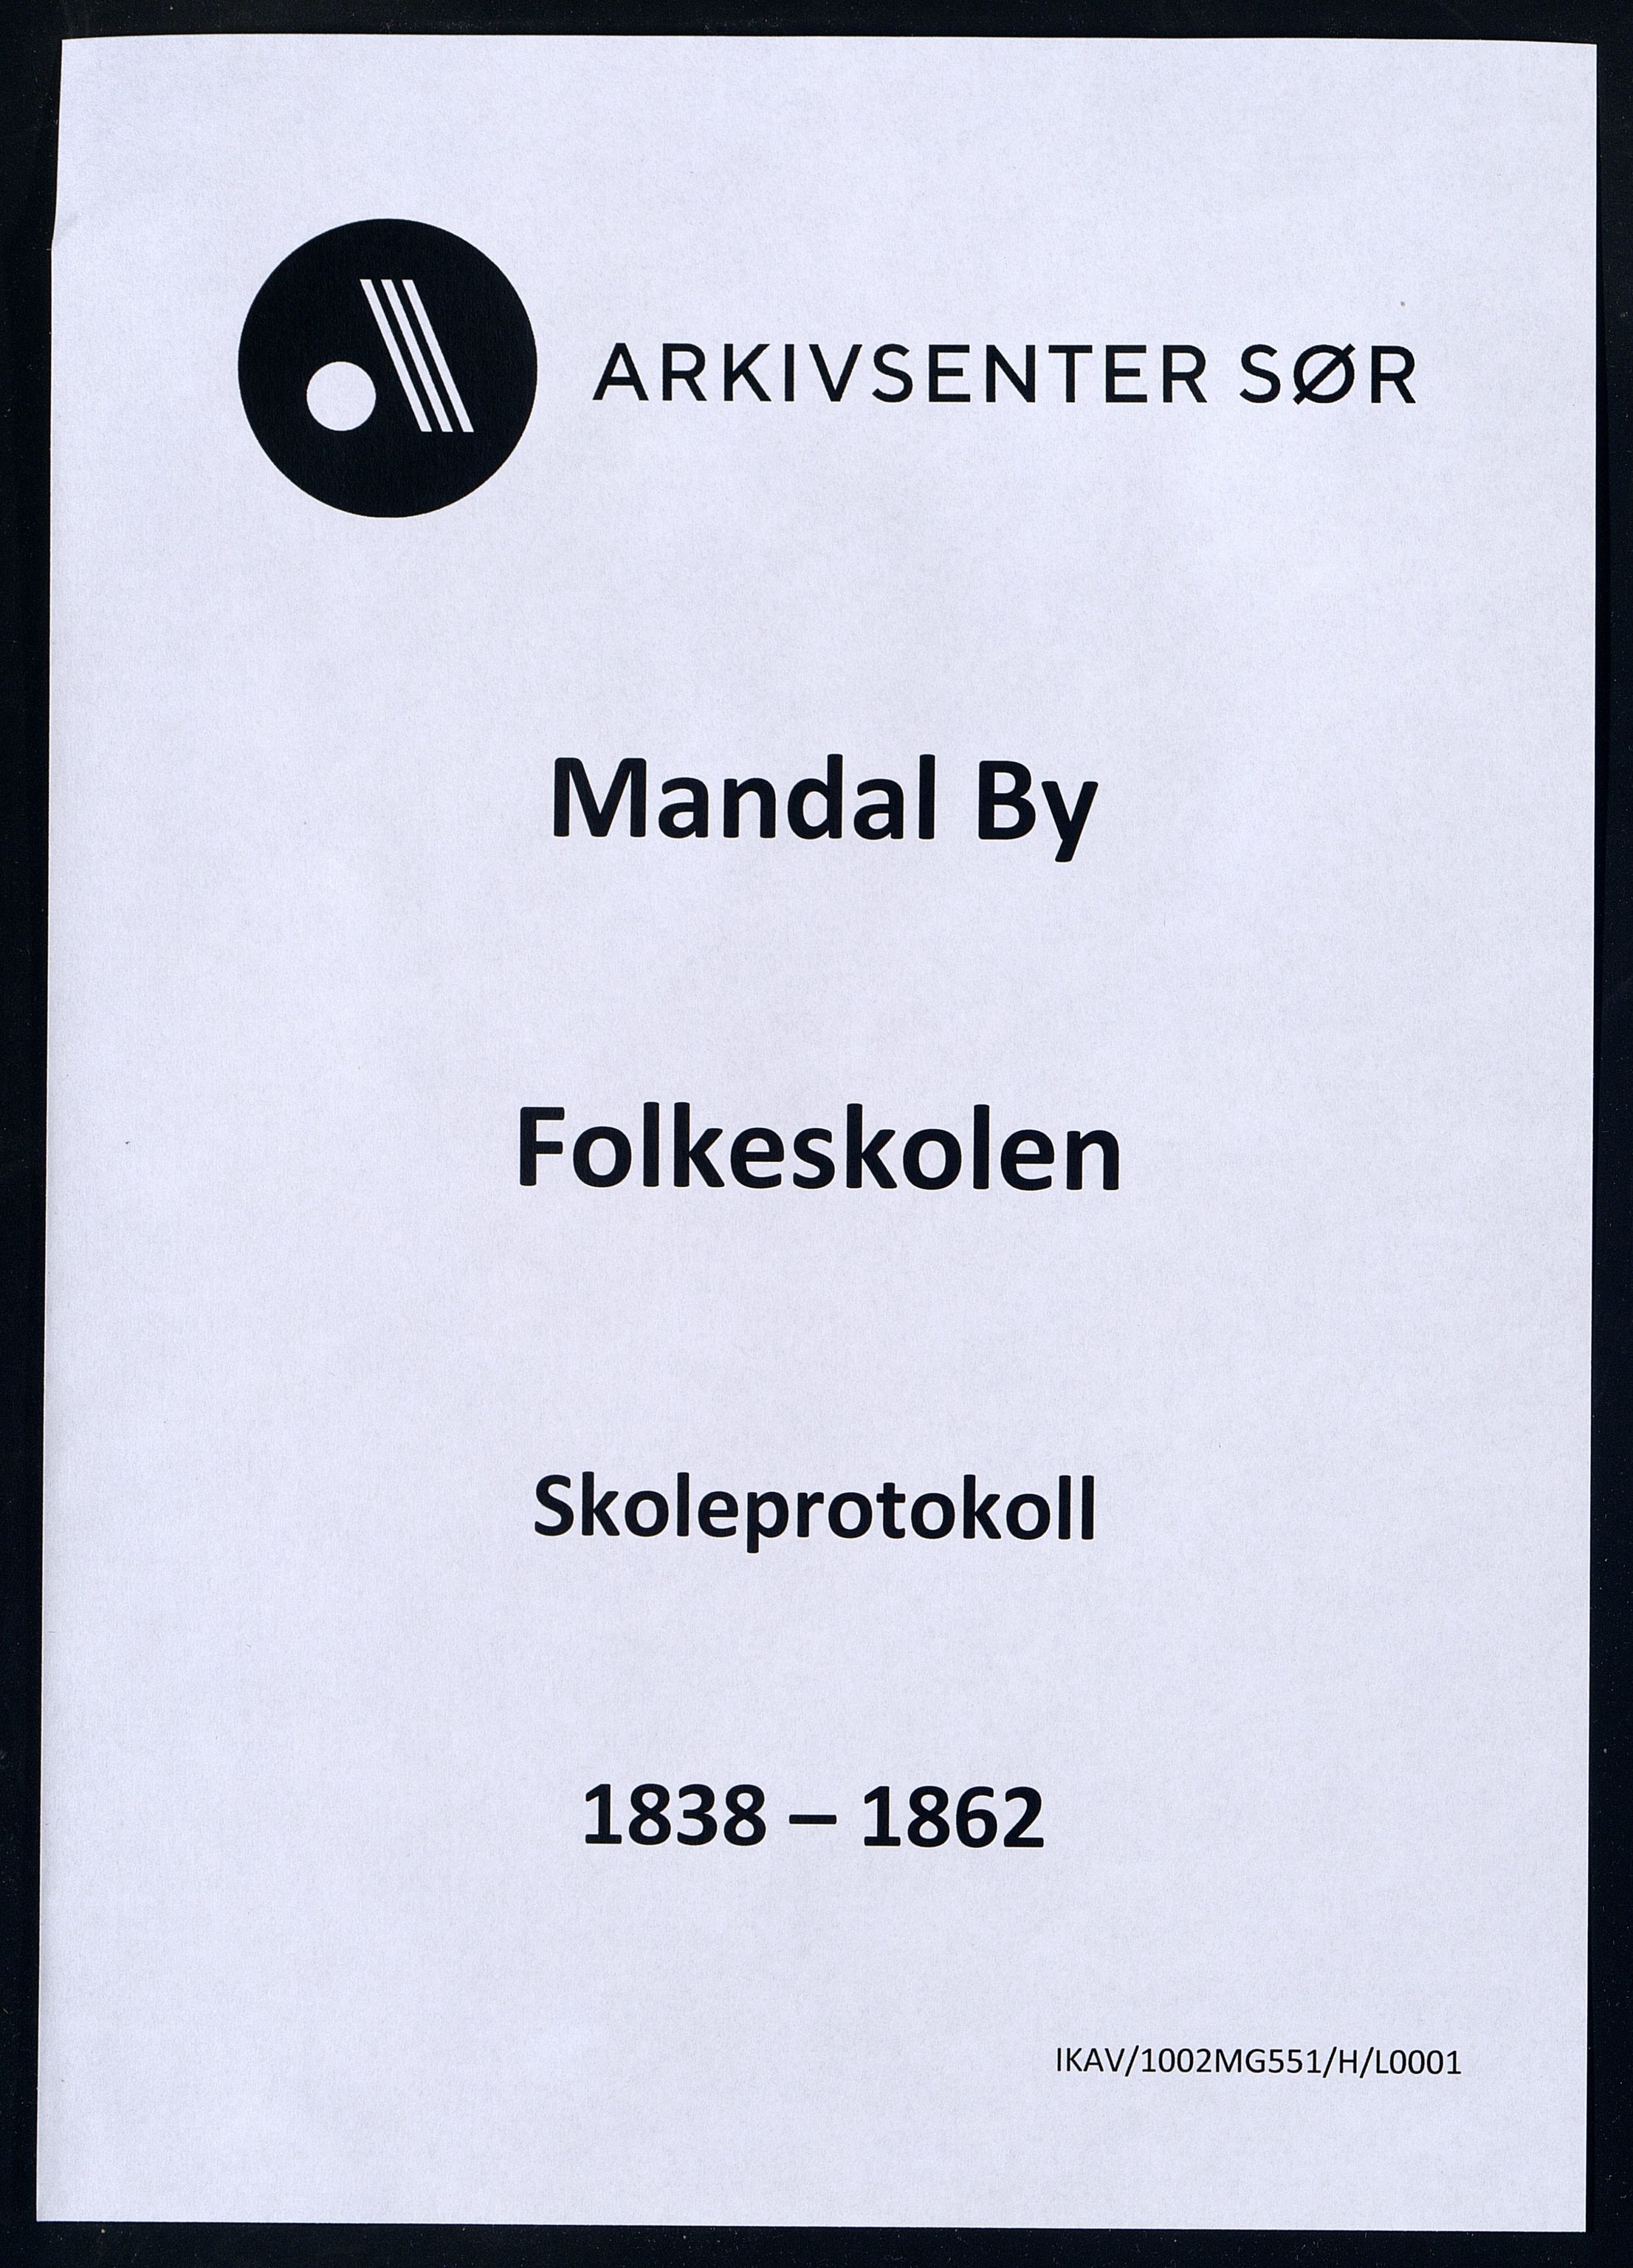 Mandal By - Mandal Allmueskole/Folkeskole/Skole, IKAV/1002MG551/H/L0001: Skoleprotokoll, 1838-1862